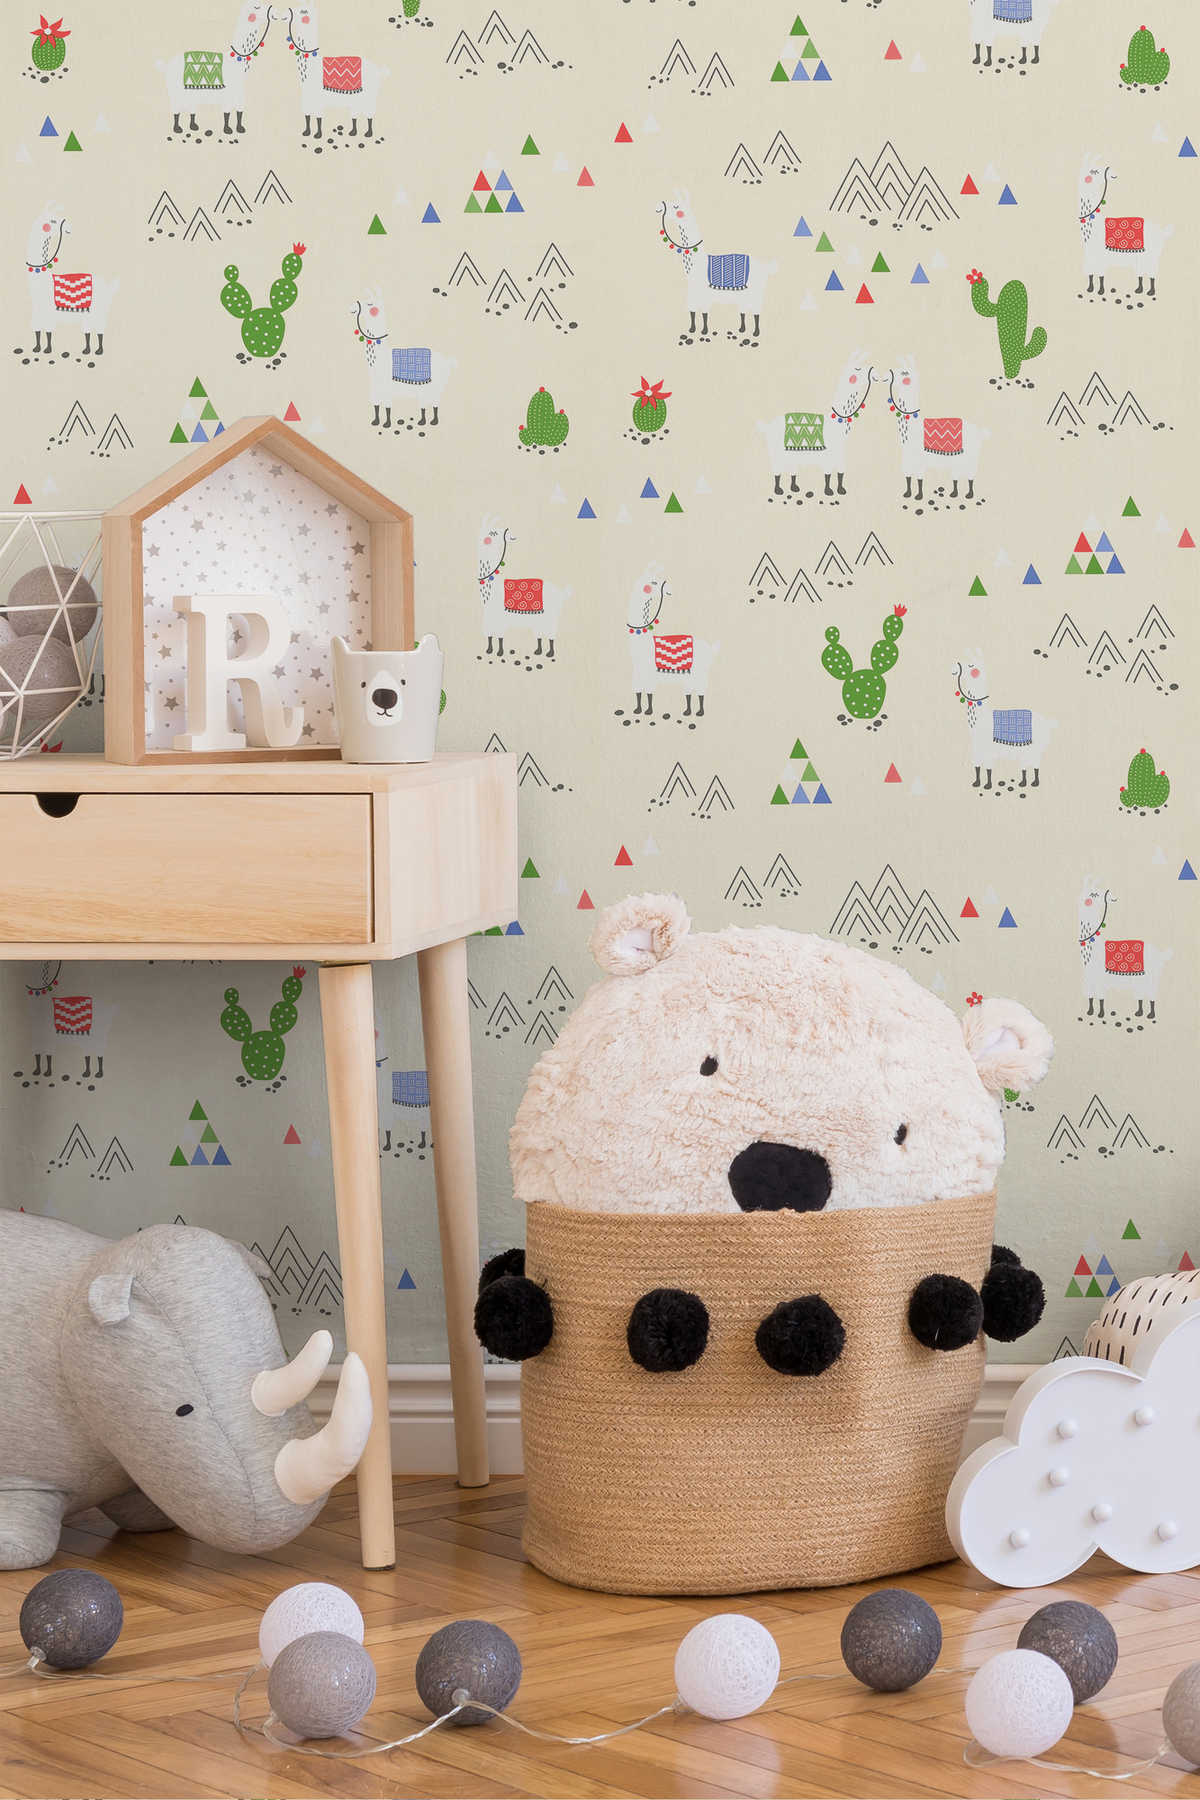             Papel pintado de Llama para habitación infantil en estilo cómic - beige, crema
        